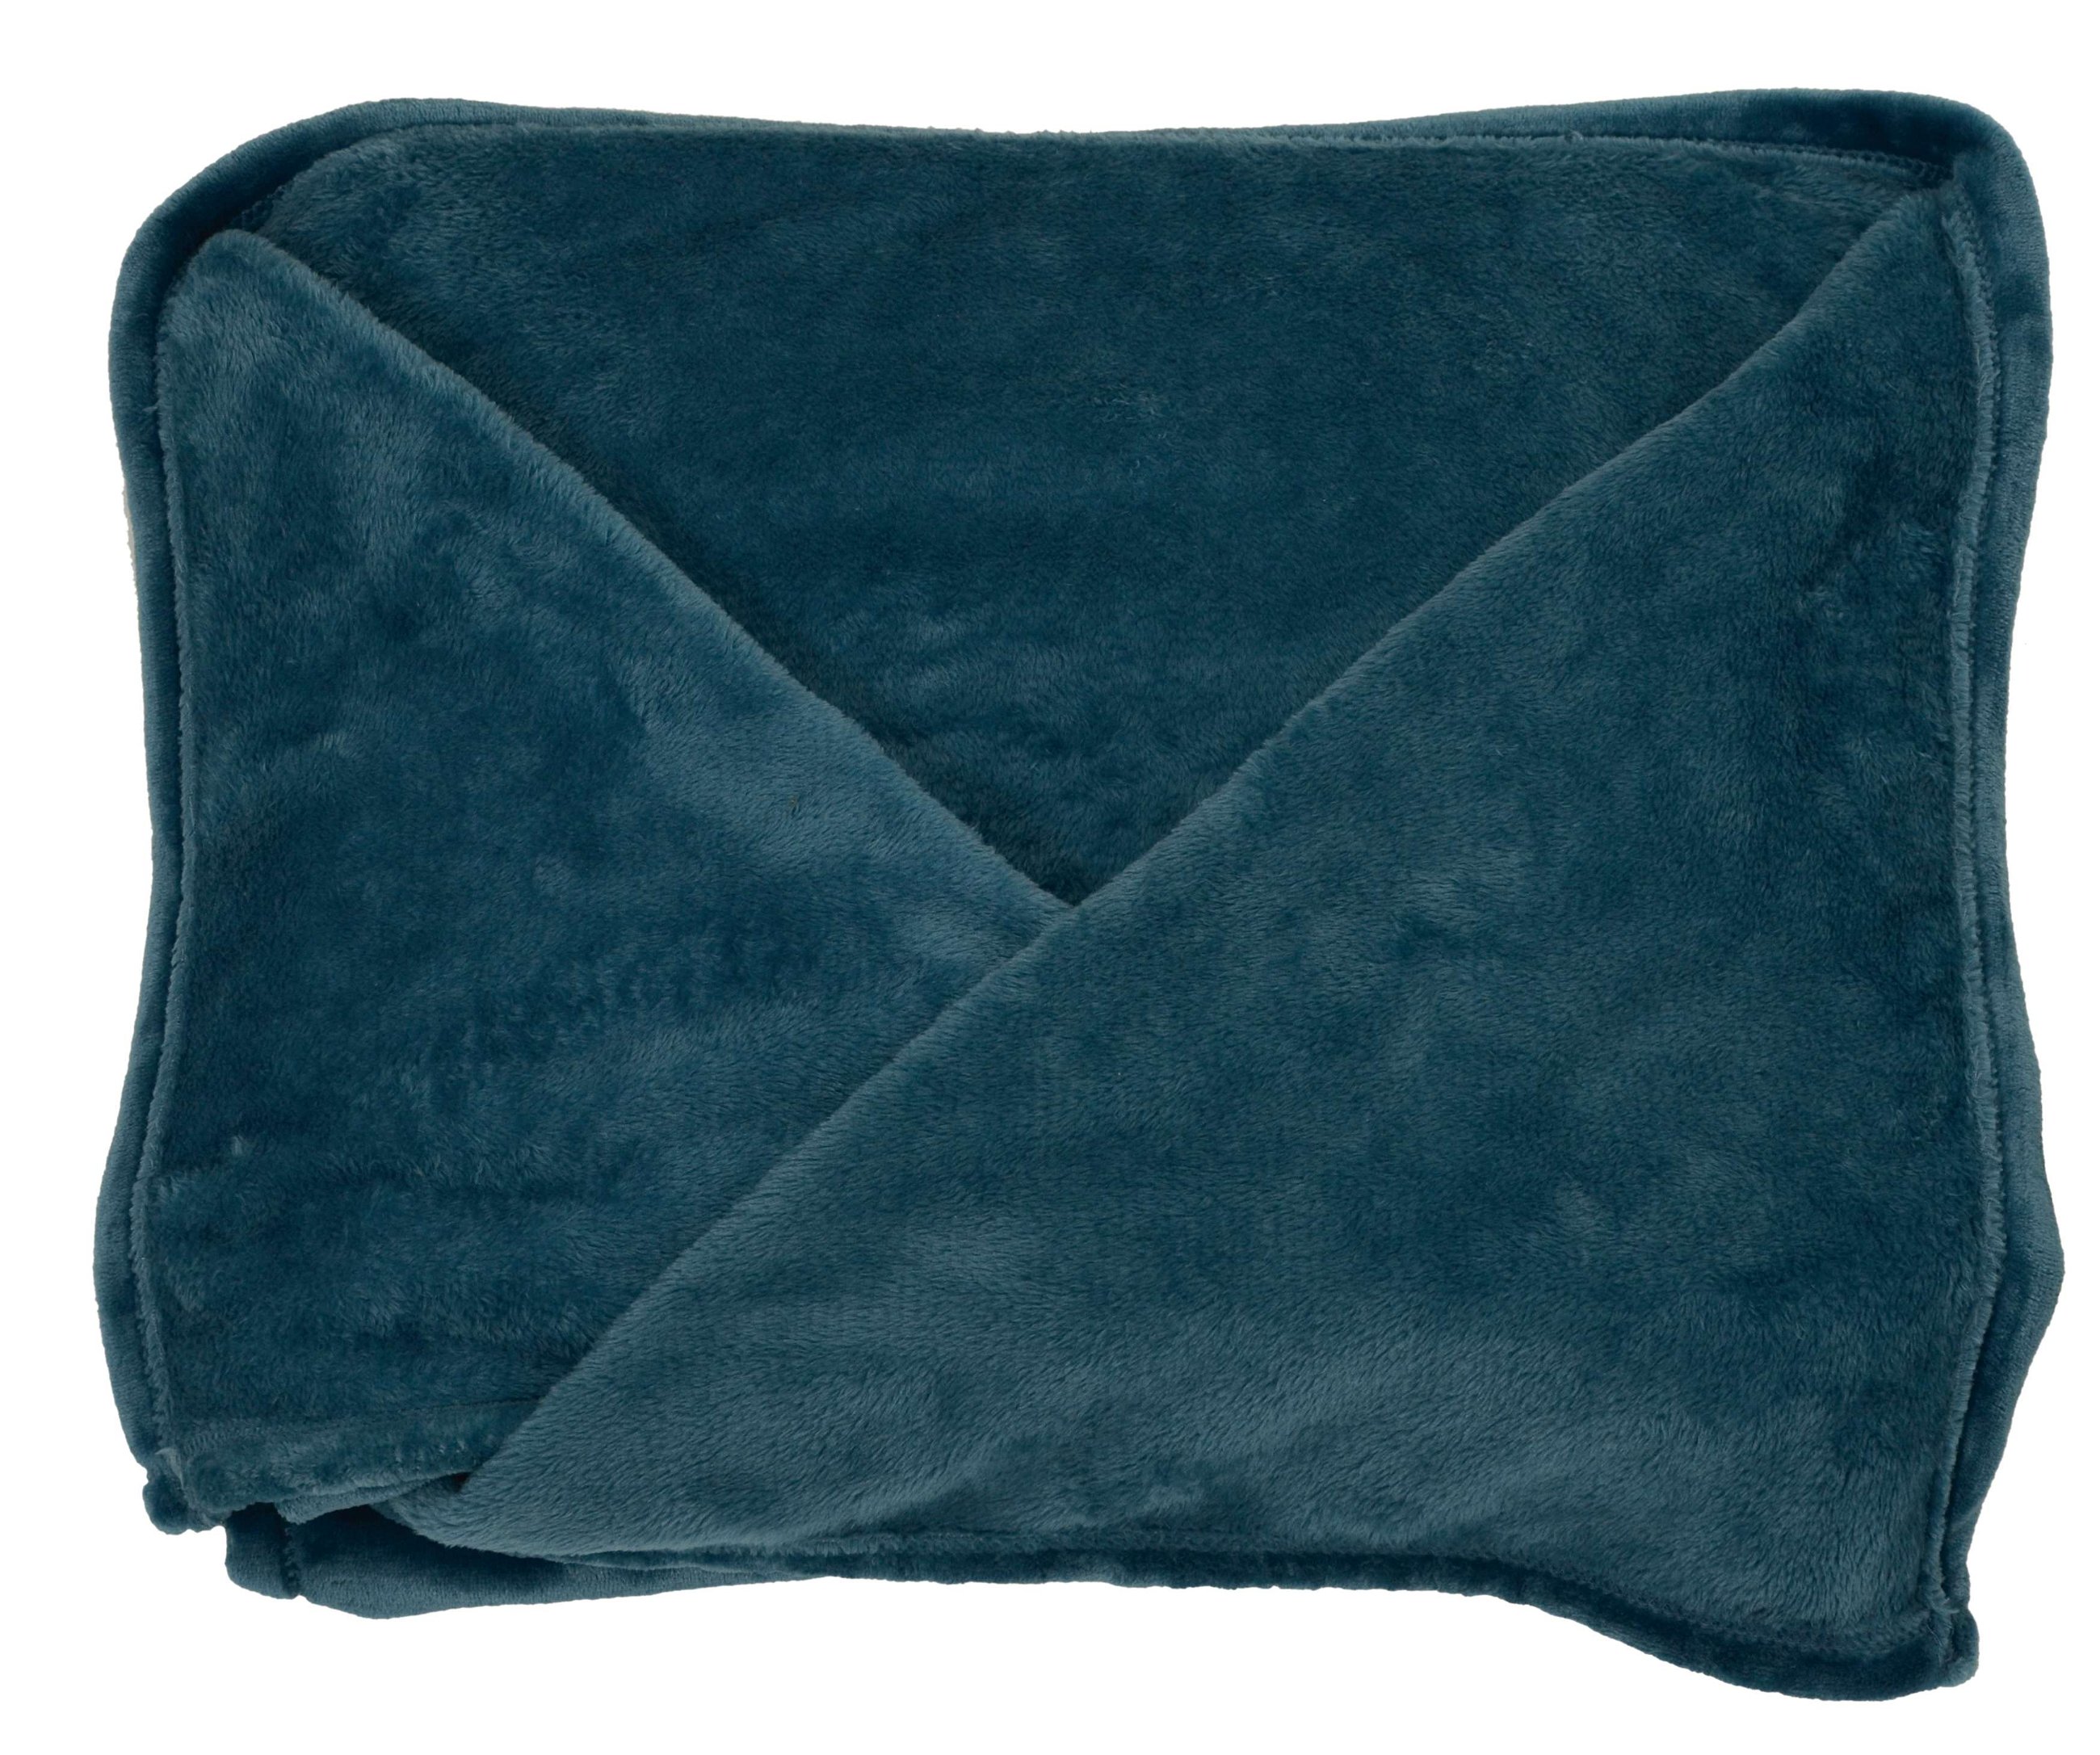 Coperta in pile con maniche XL blu 170x200cm